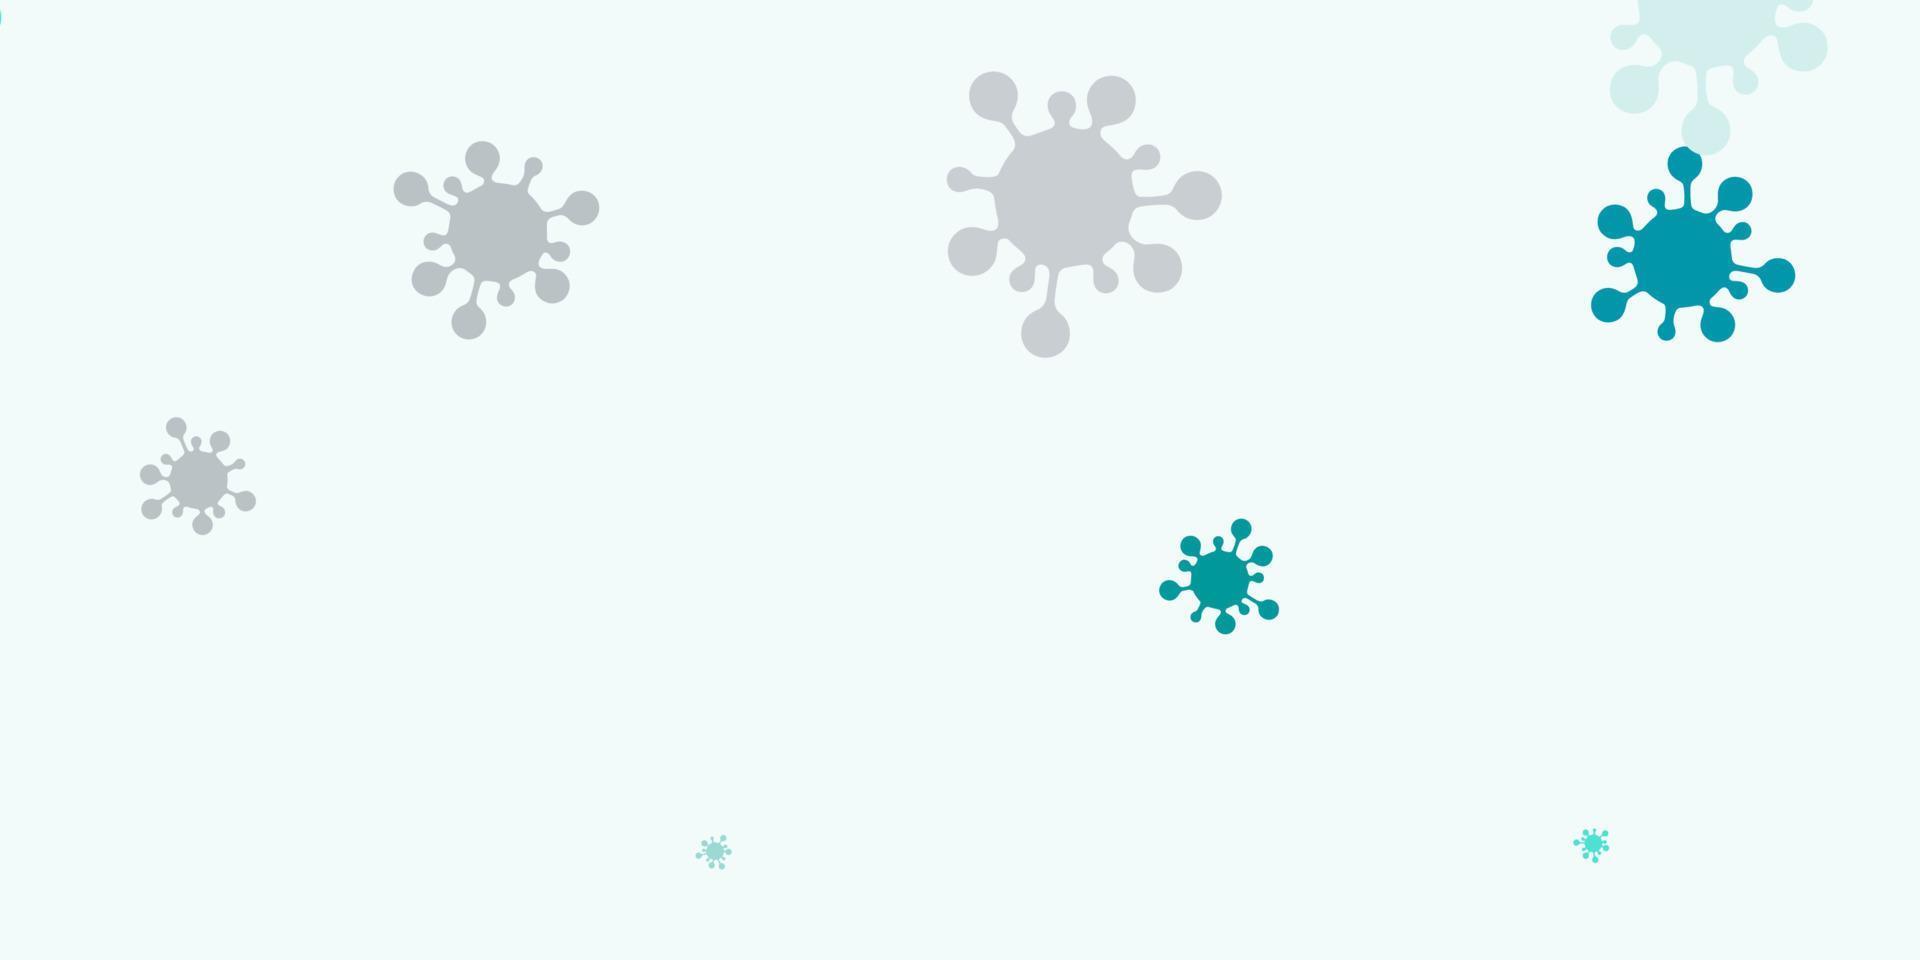 padrão de vetor verde claro com elementos de coronavírus.